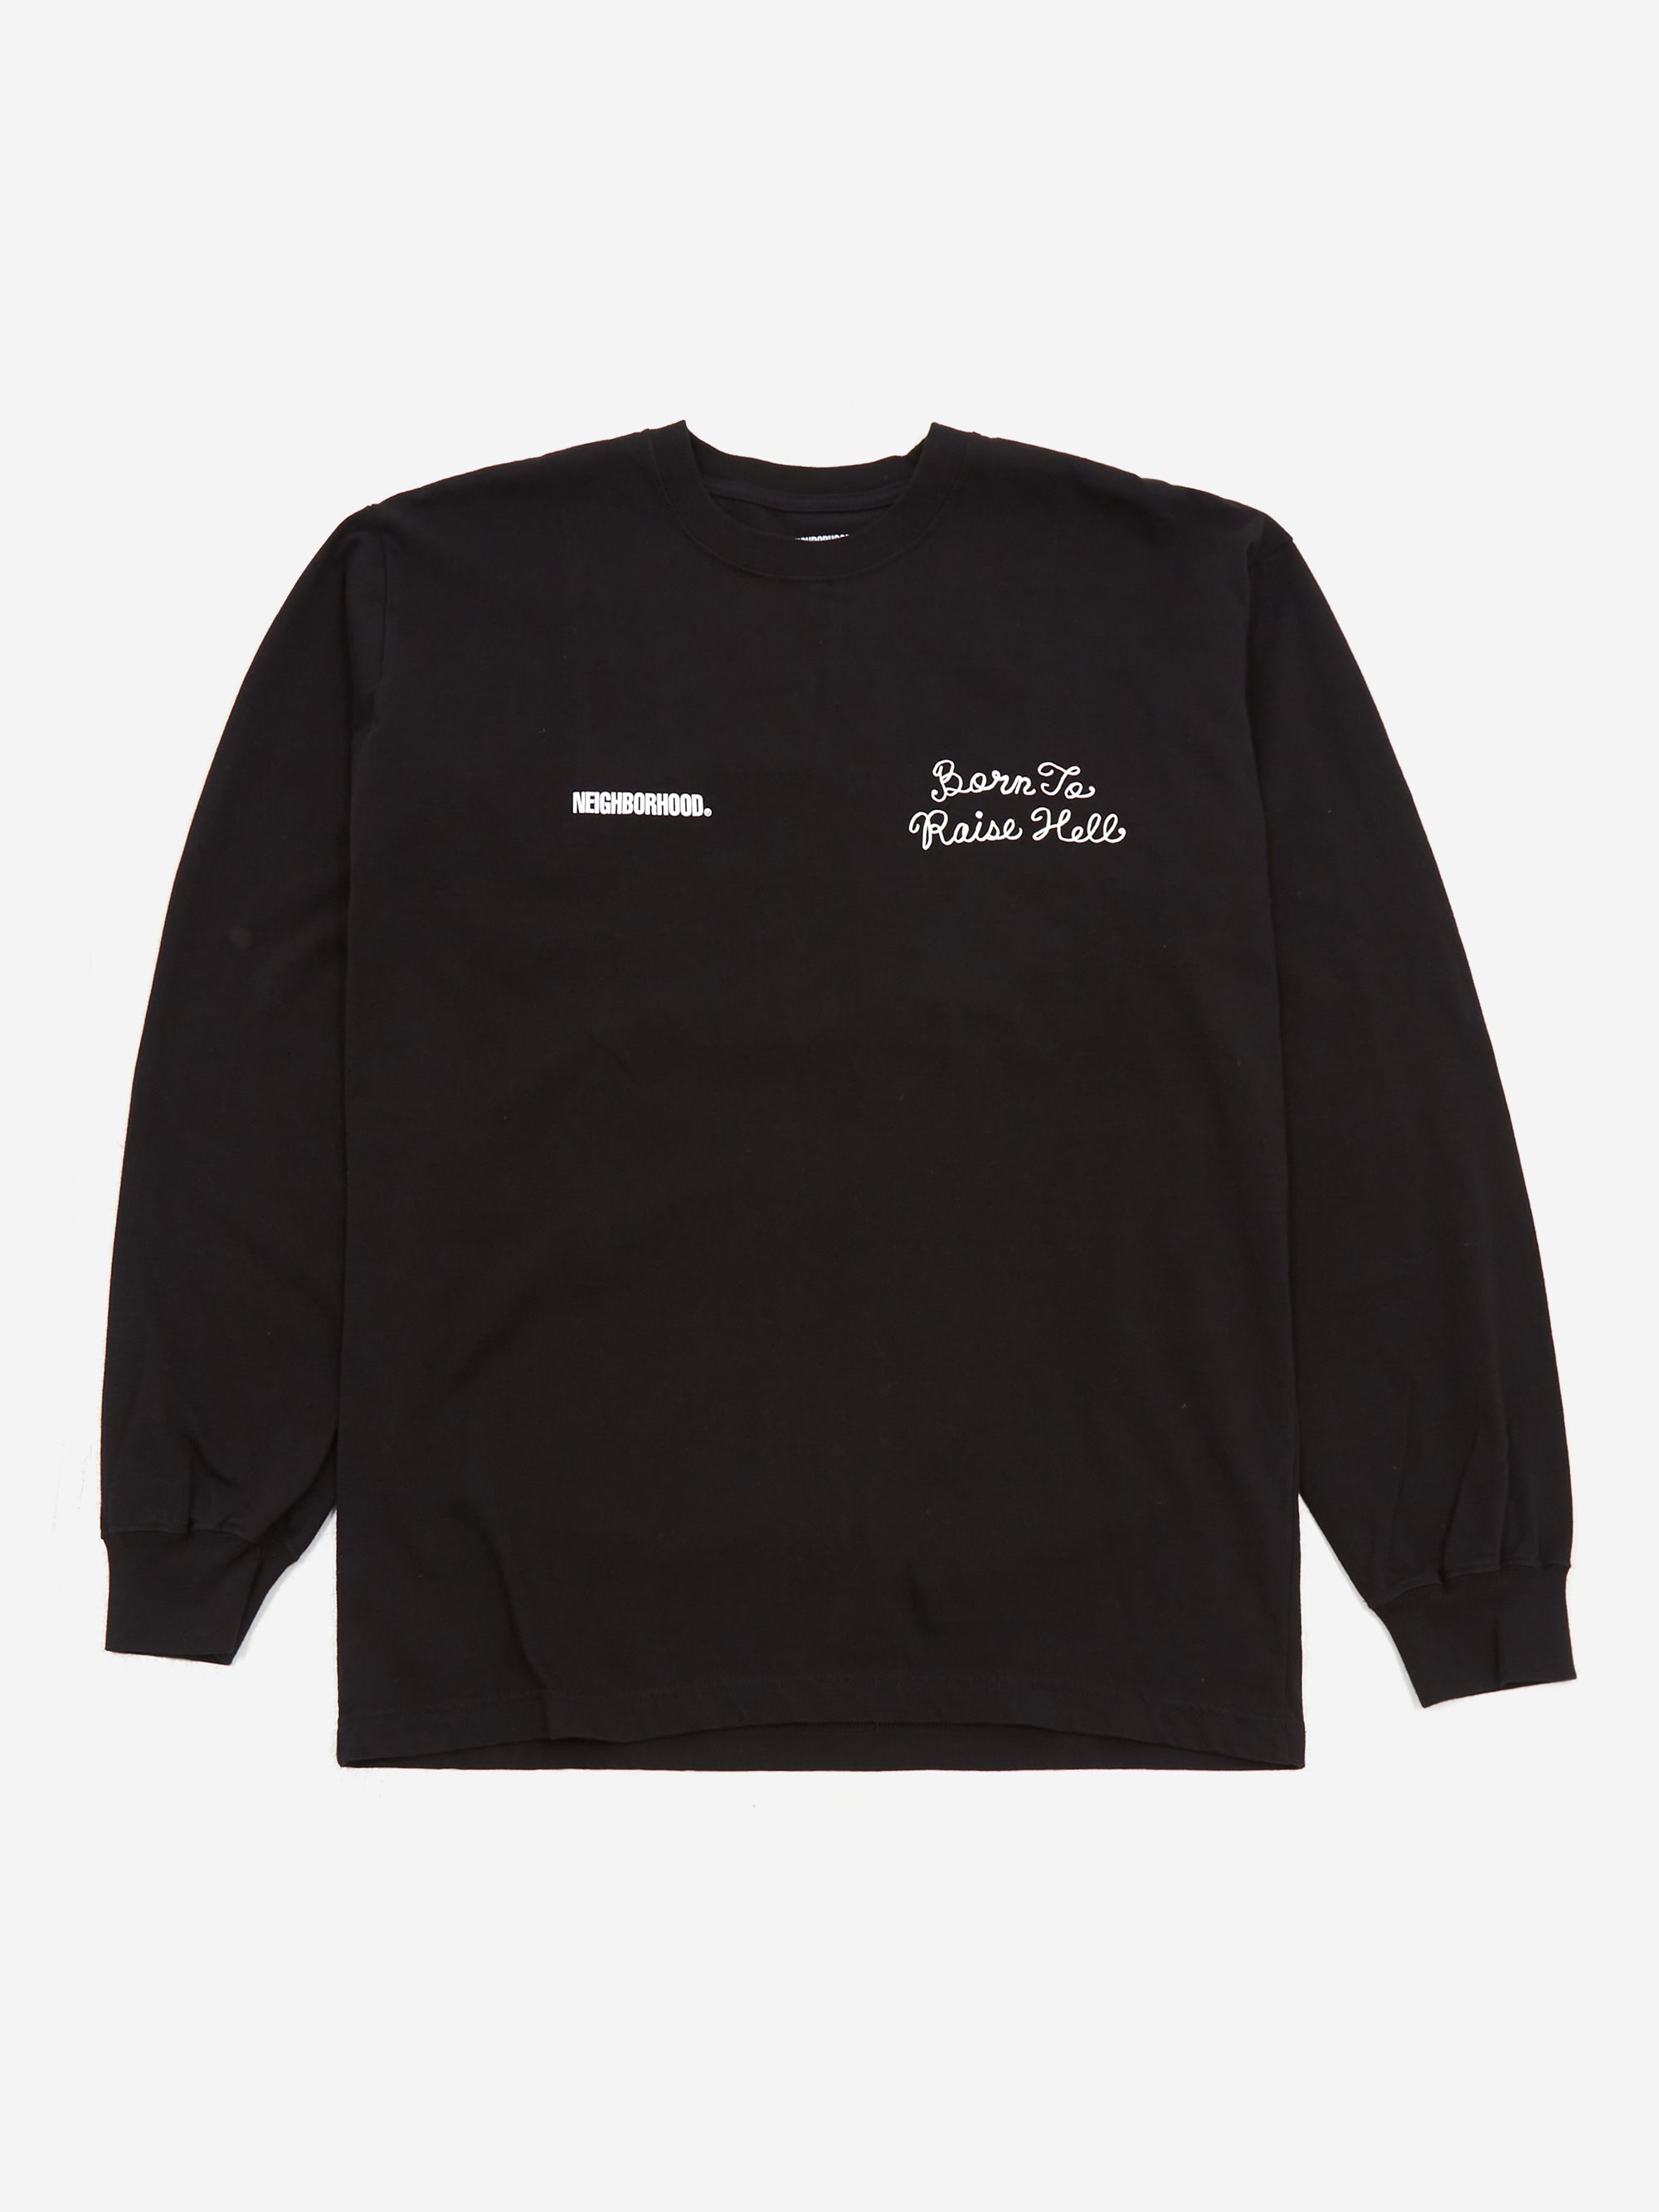 Neighborhood NH.9 Long Sleeve T-Shirt - Black – Goodhood